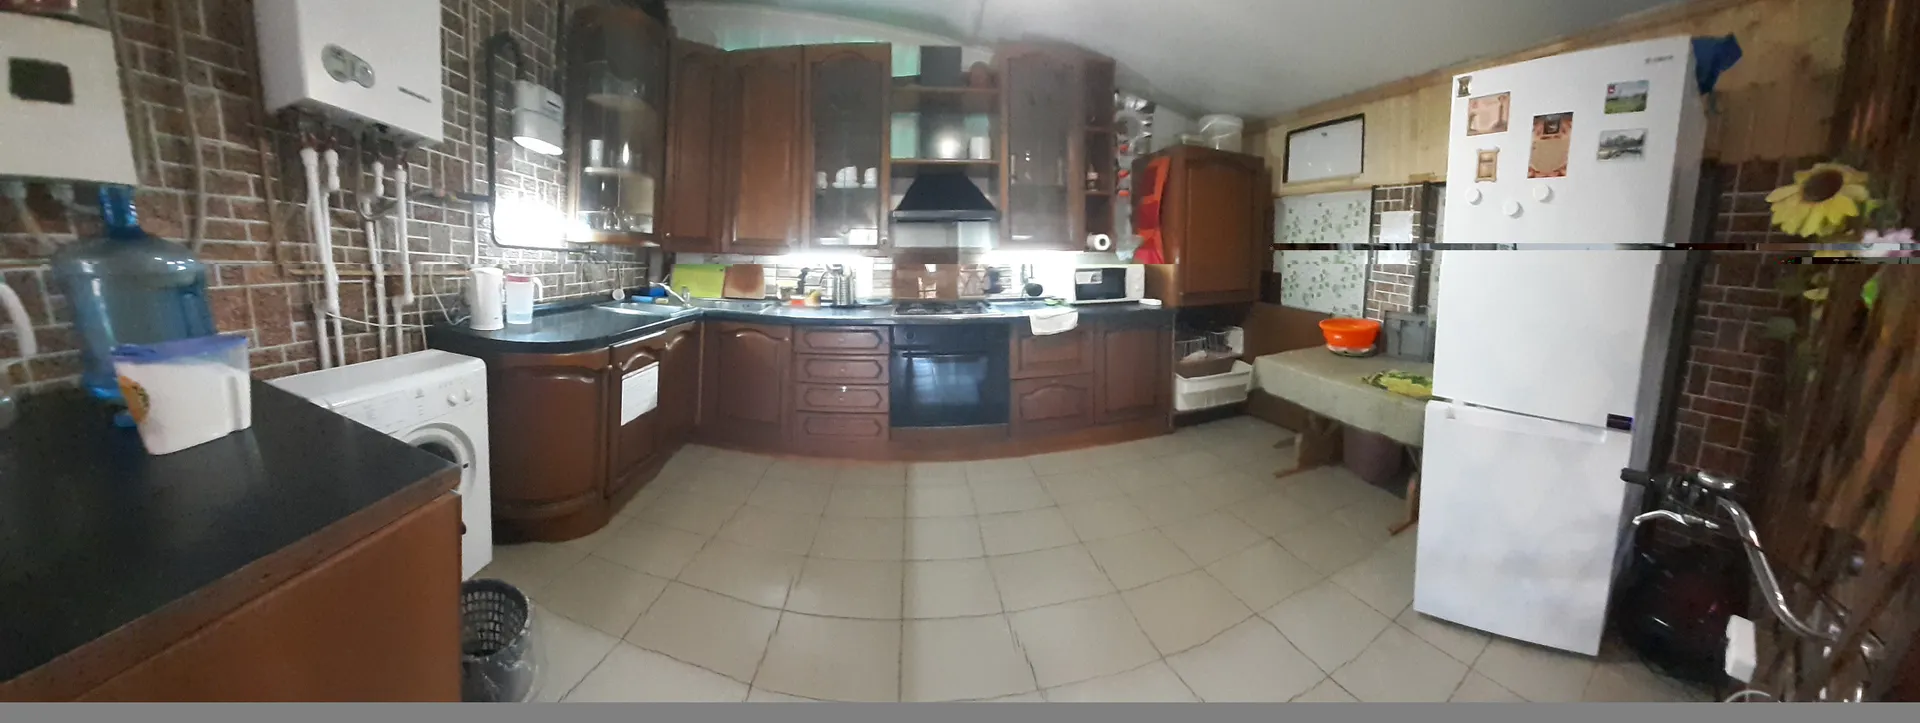 Кухня панорама